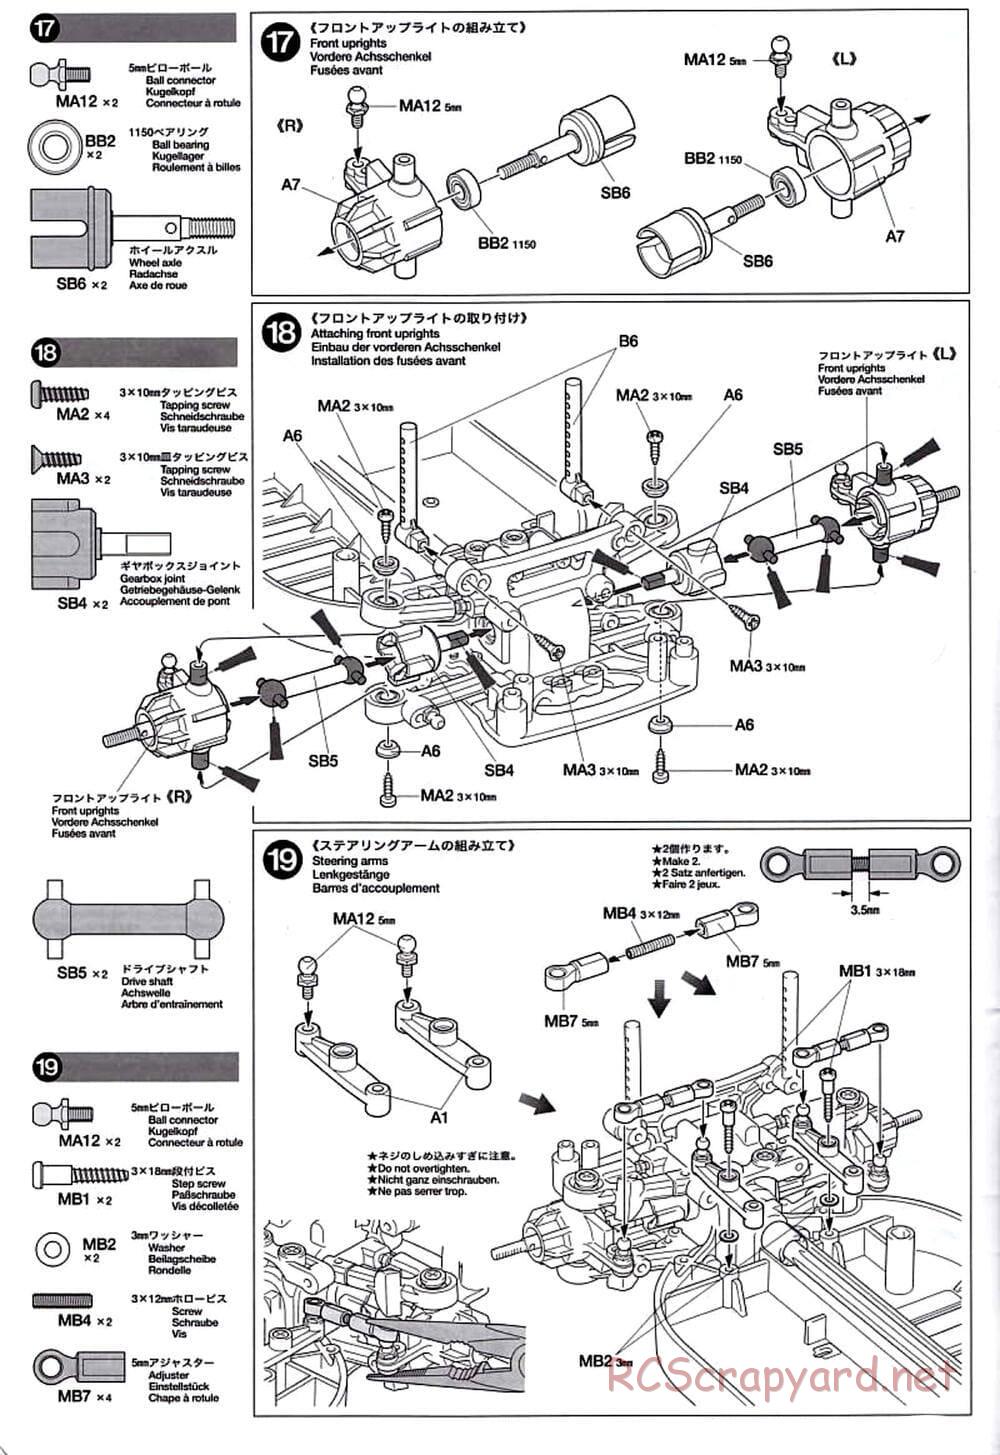 Tamiya - TT-01D Chassis - Manual - Page 10